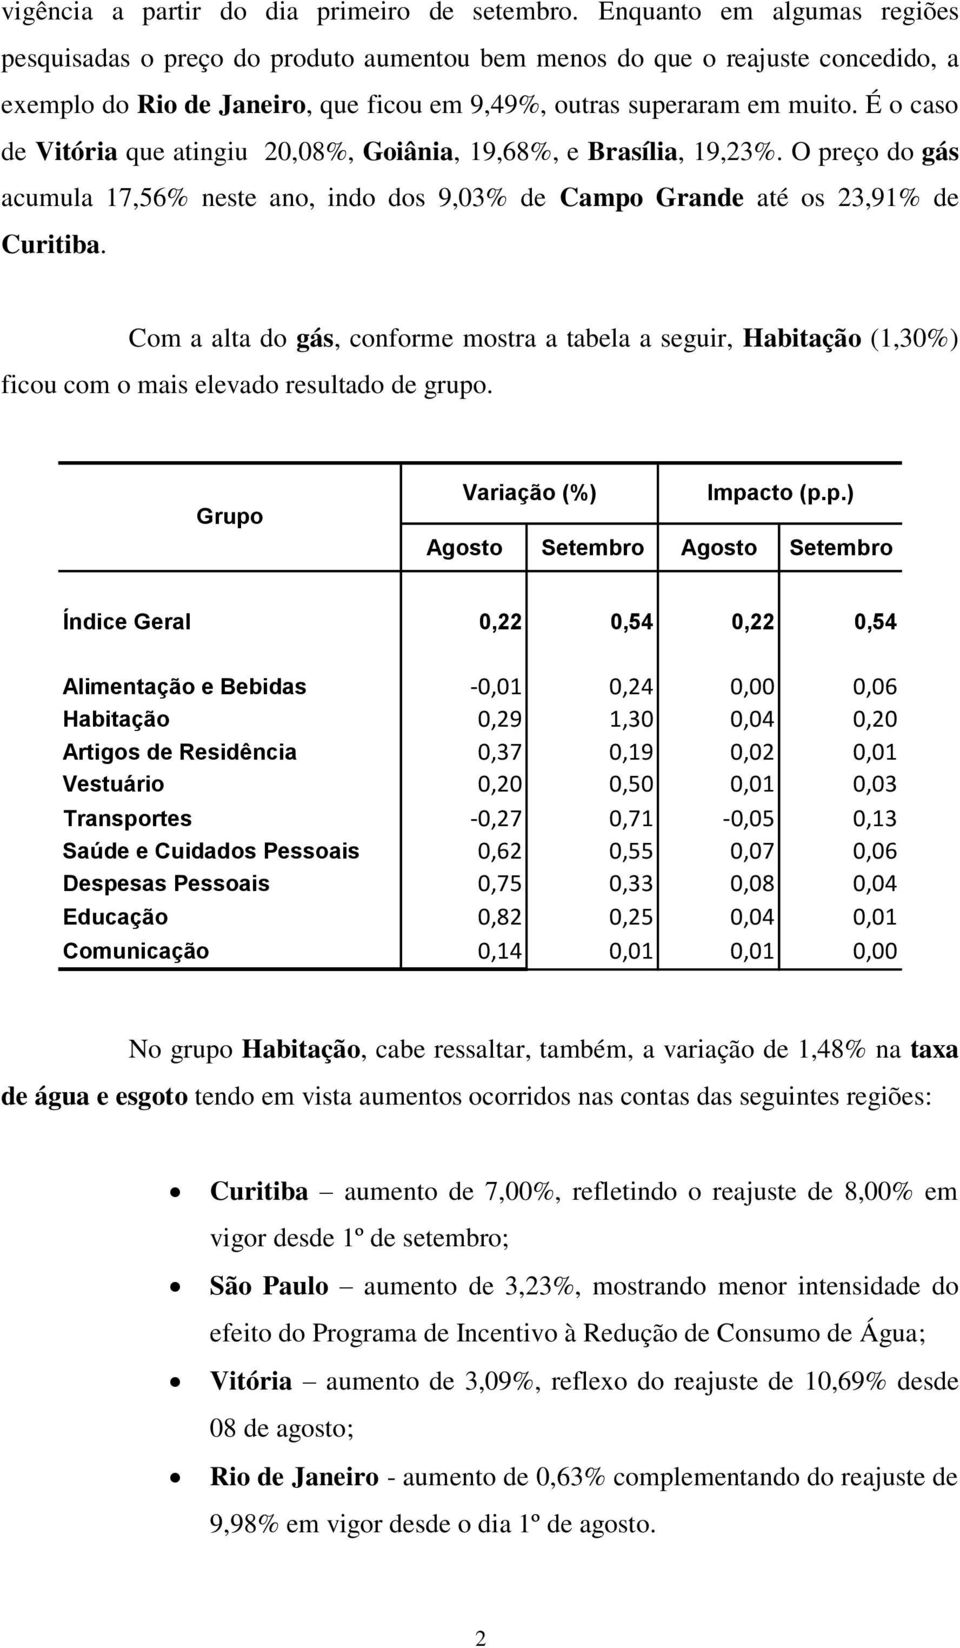 É o caso de Vitória que atingiu 20,08%, Goiânia, 19,68%, e Brasília, 19,23%. O preço do gás acumula 17,56% neste ano, indo dos 9,03% de Campo Grande até os 23,91% de Curitiba.